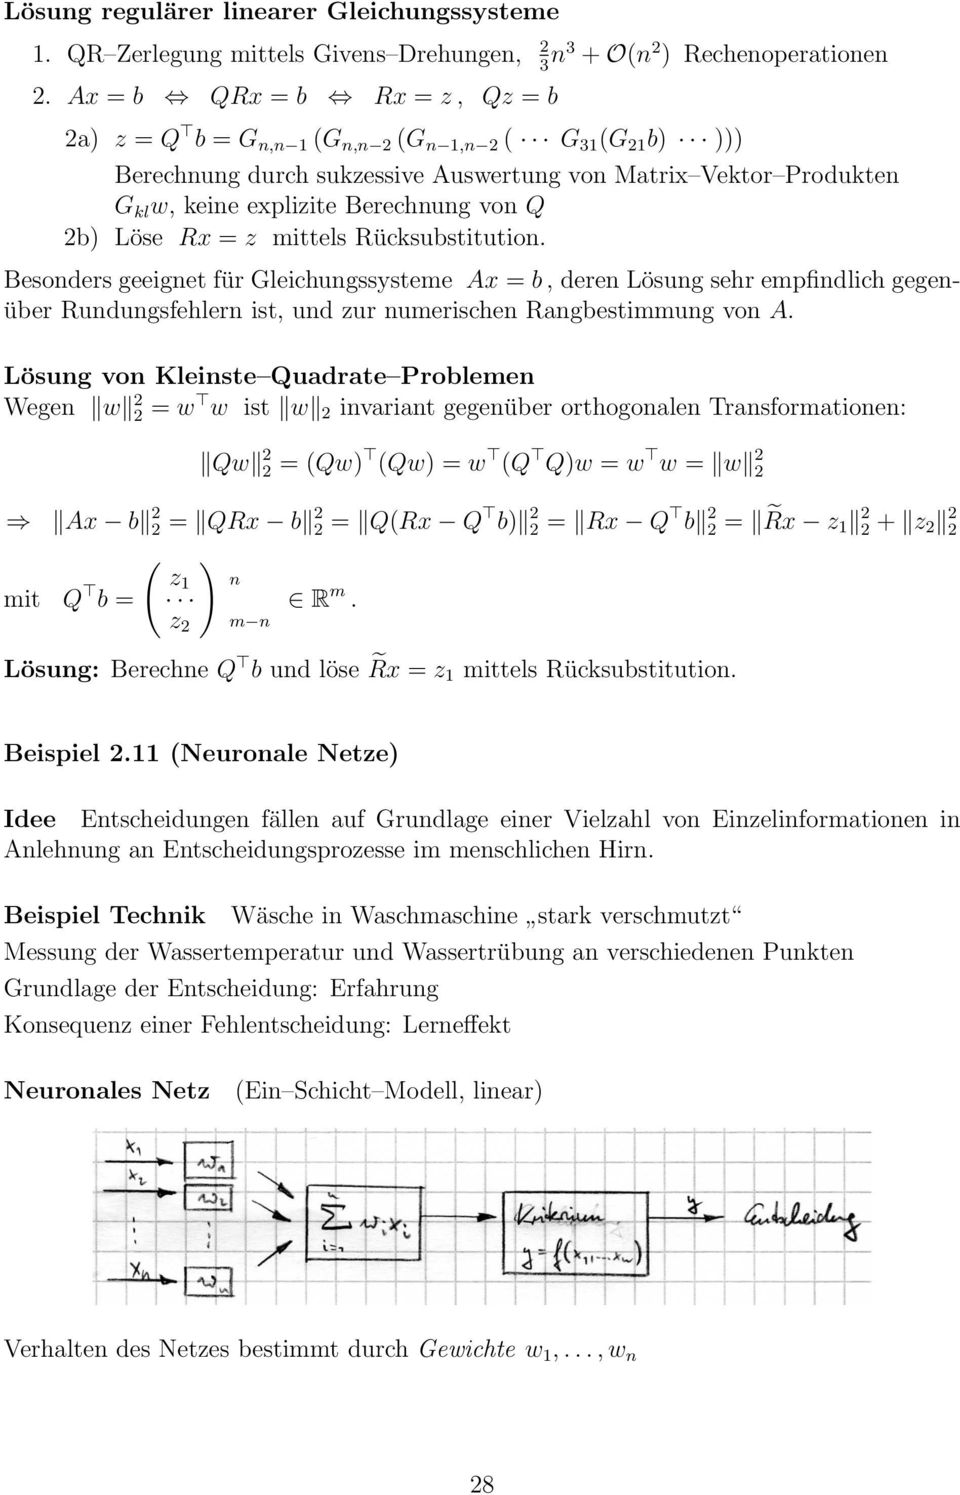 Löse Rx = z mittels Rücksubstitution. Besonders geeignet für Gleichungssysteme Ax = b, deren Lösung sehr empfindlich gegenüber Rundungsfehlern ist, und zur numerischen Rangbestimmung von A.